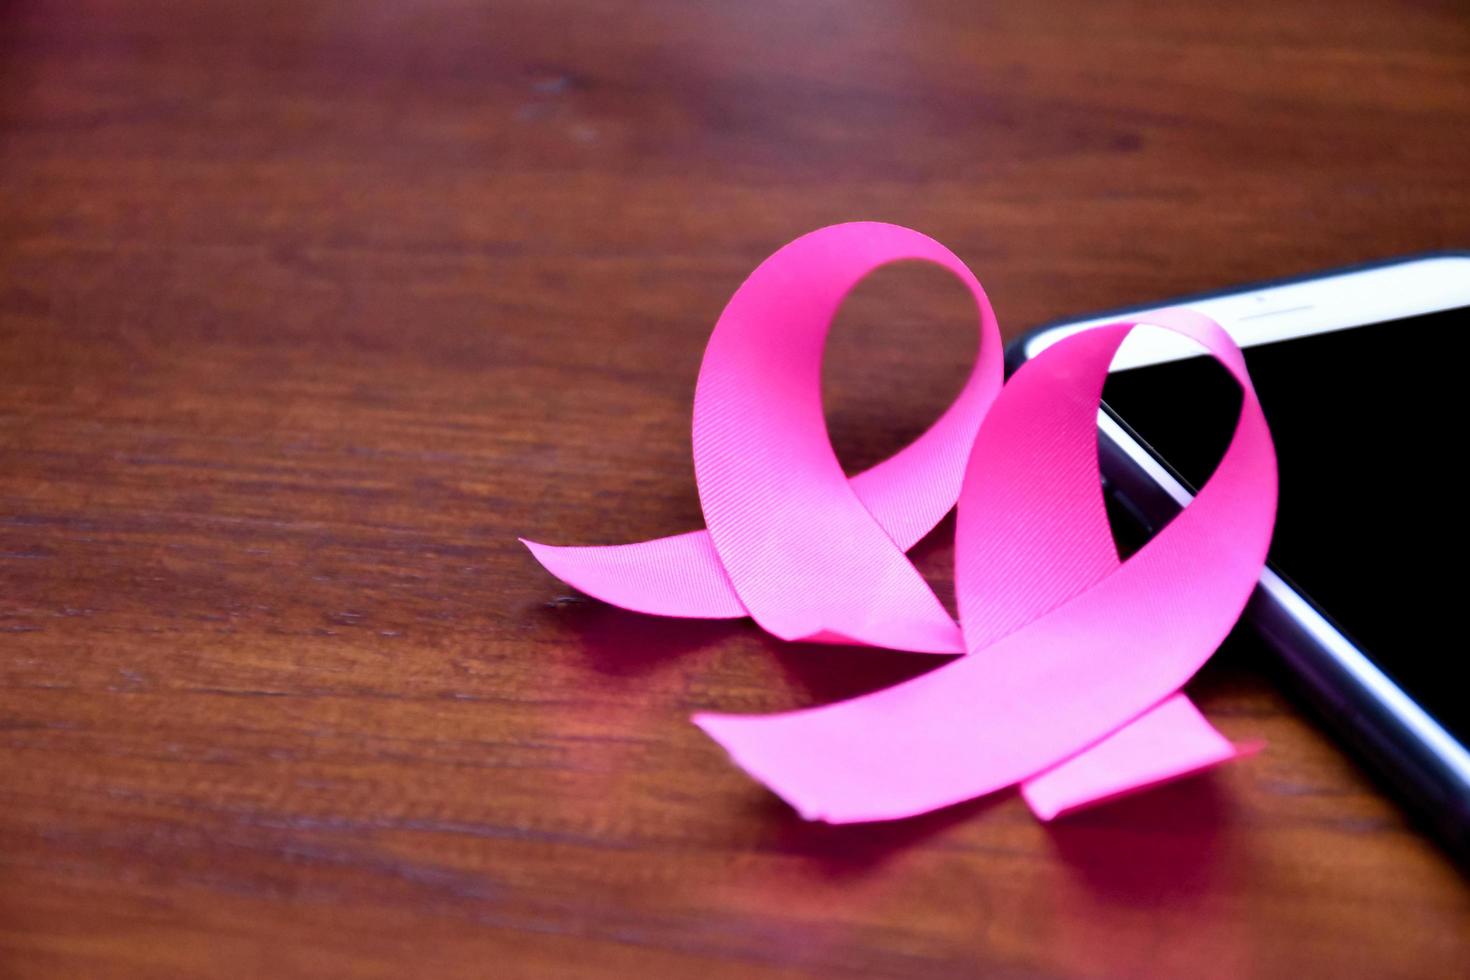 cinta rosa en la mesa con teléfono móvil. concepto para protestar y apoyar el cáncer de mama contra la mujer. foto